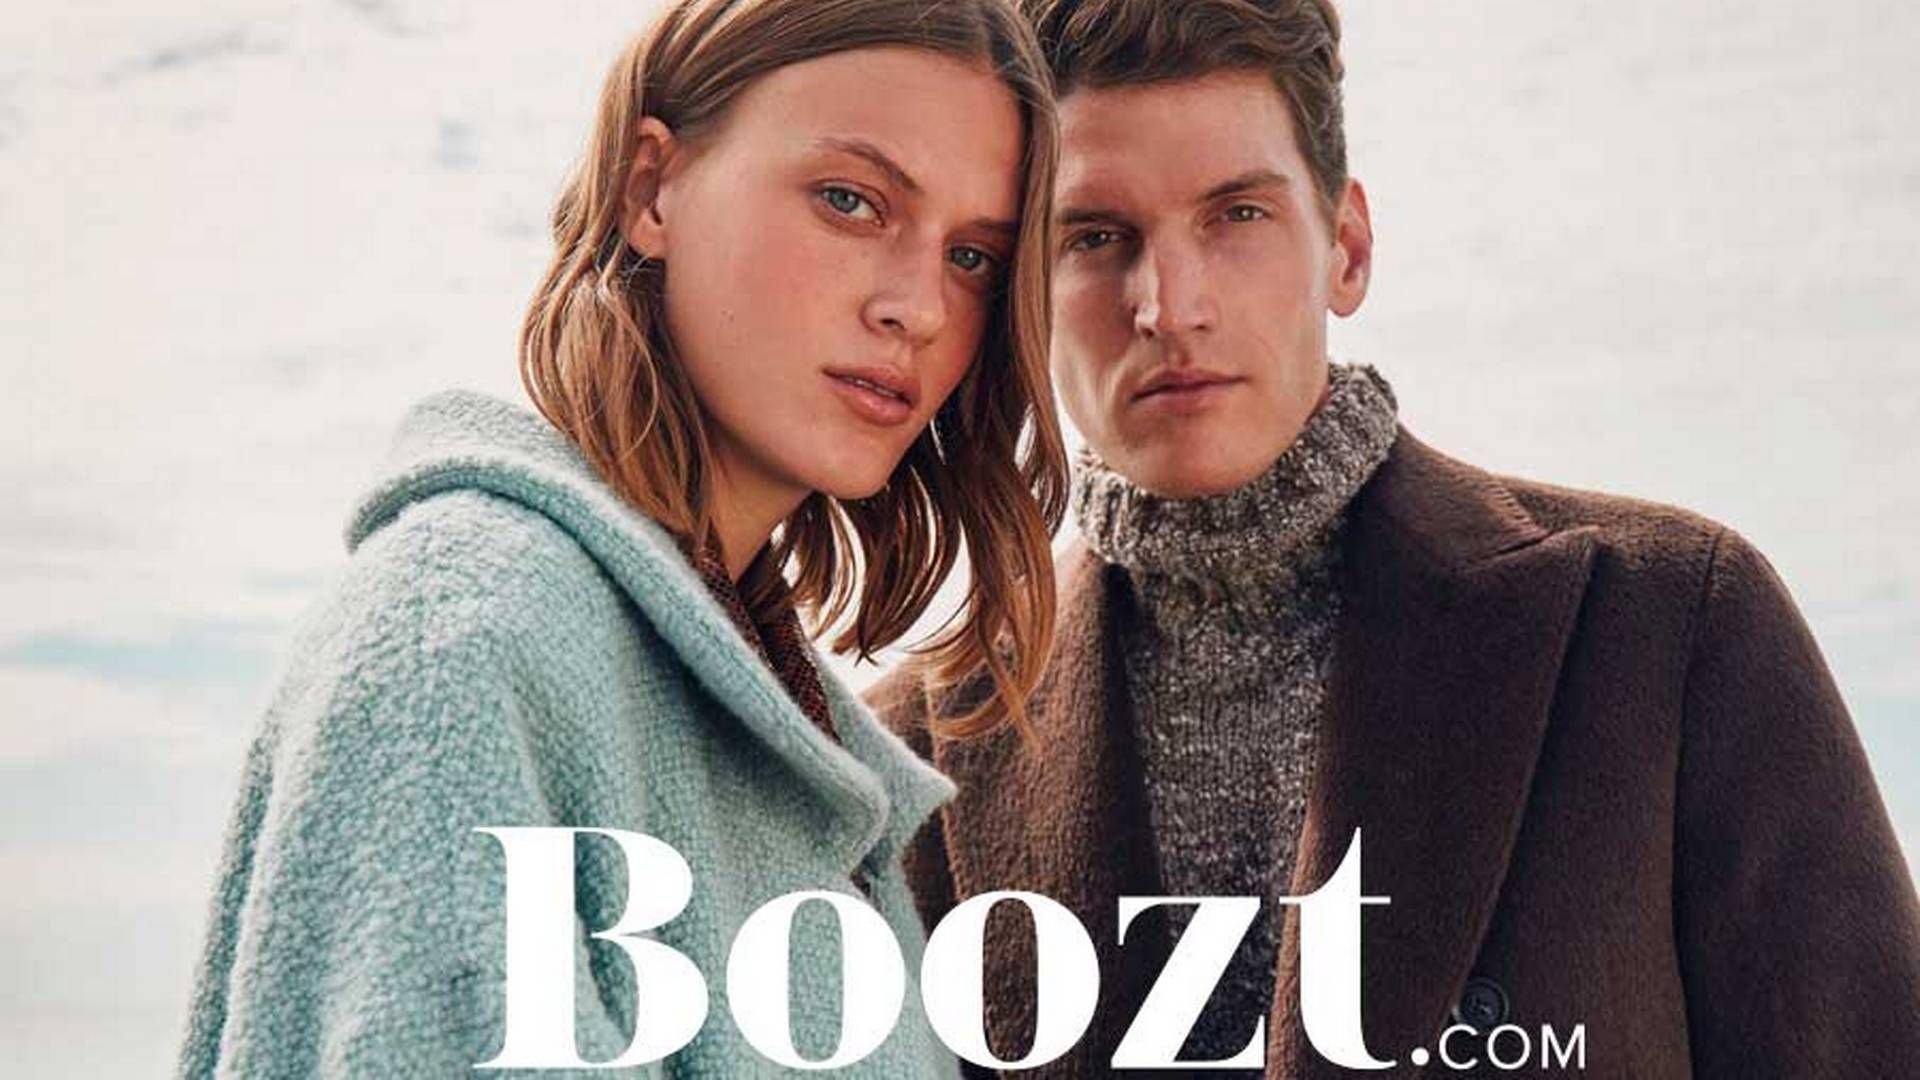 Boozt løftede salget under black friday bl.a. i kraft af flere varekategorier, melder selskabet. | Foto: Boozt/pr